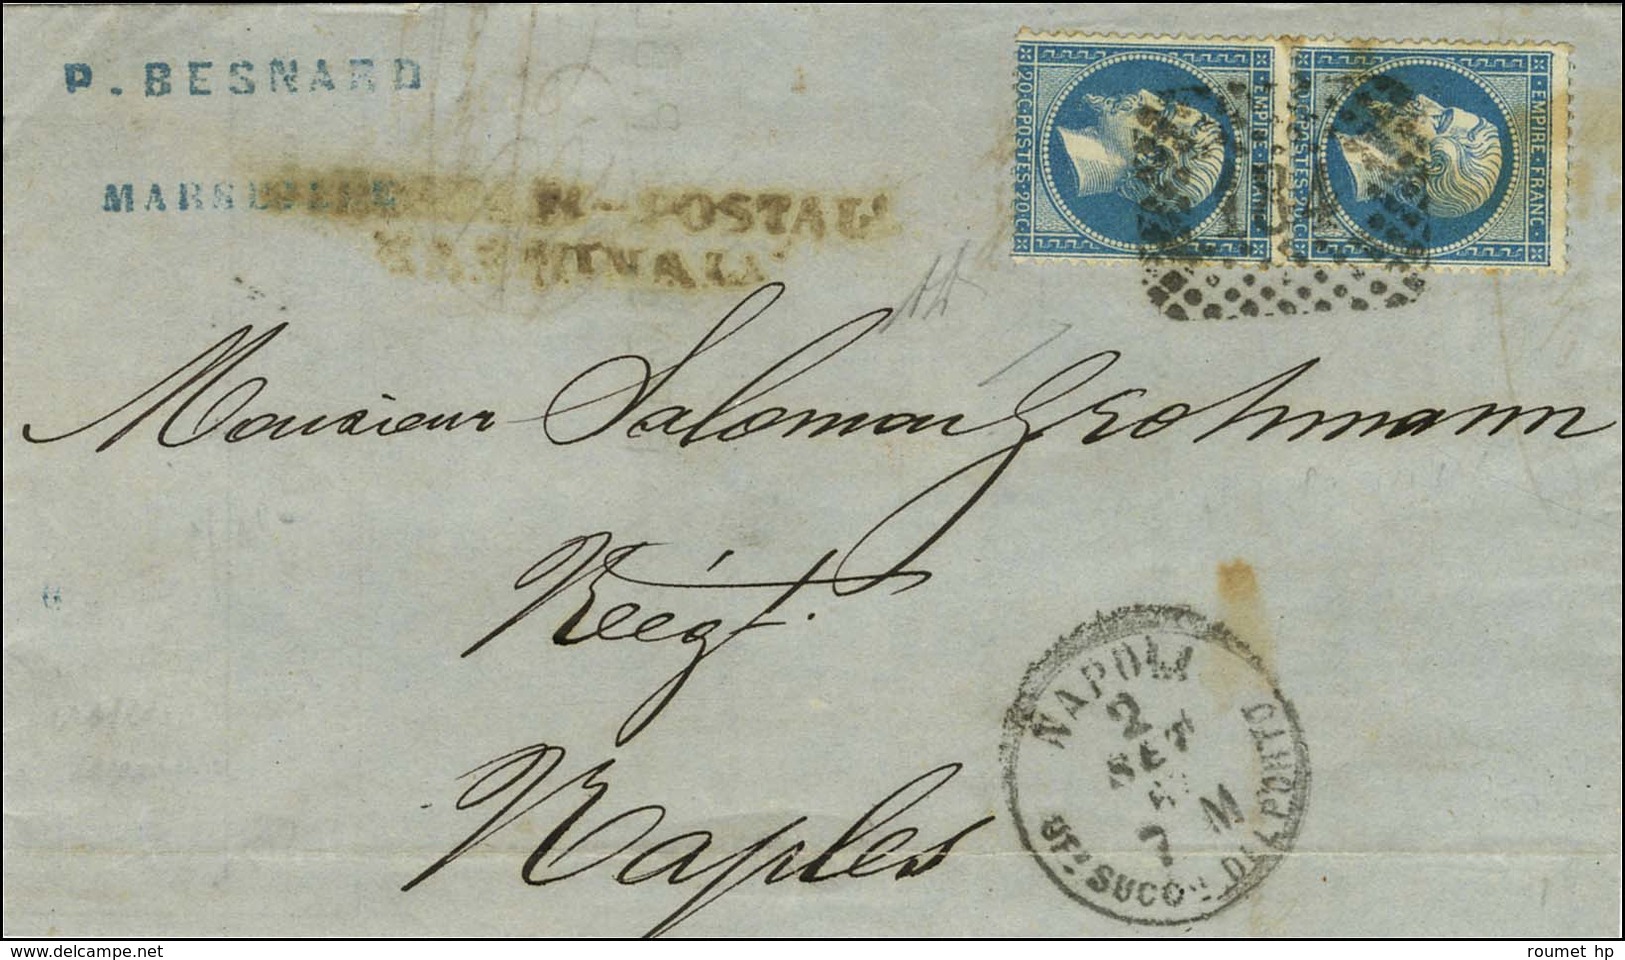 GC Italien 184 / N° 22 Paire Càd NAPOLI Sur Lettre De Marseille Pour Naples. 1867. - TB. - R. - Poste Maritime